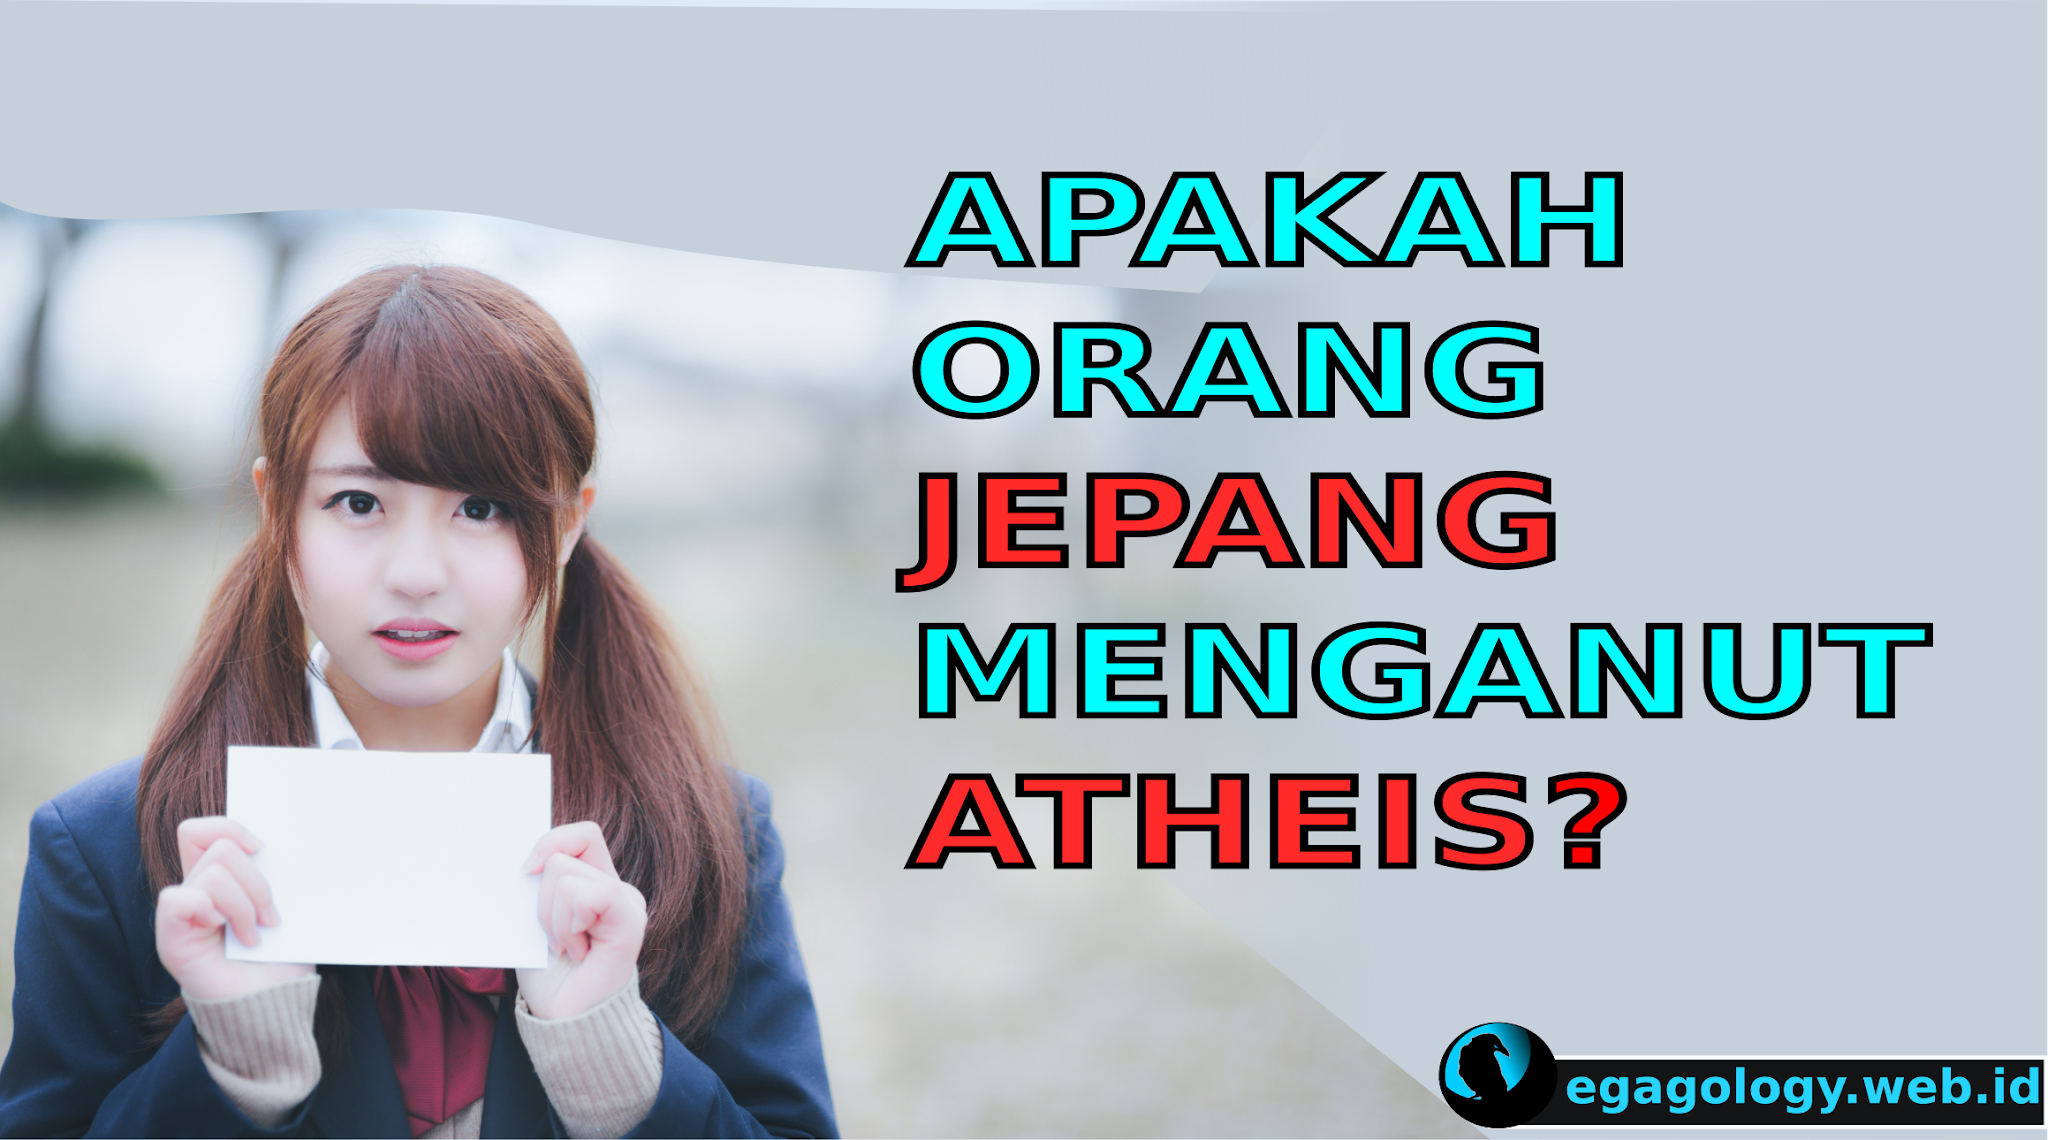 Apa itu ateis